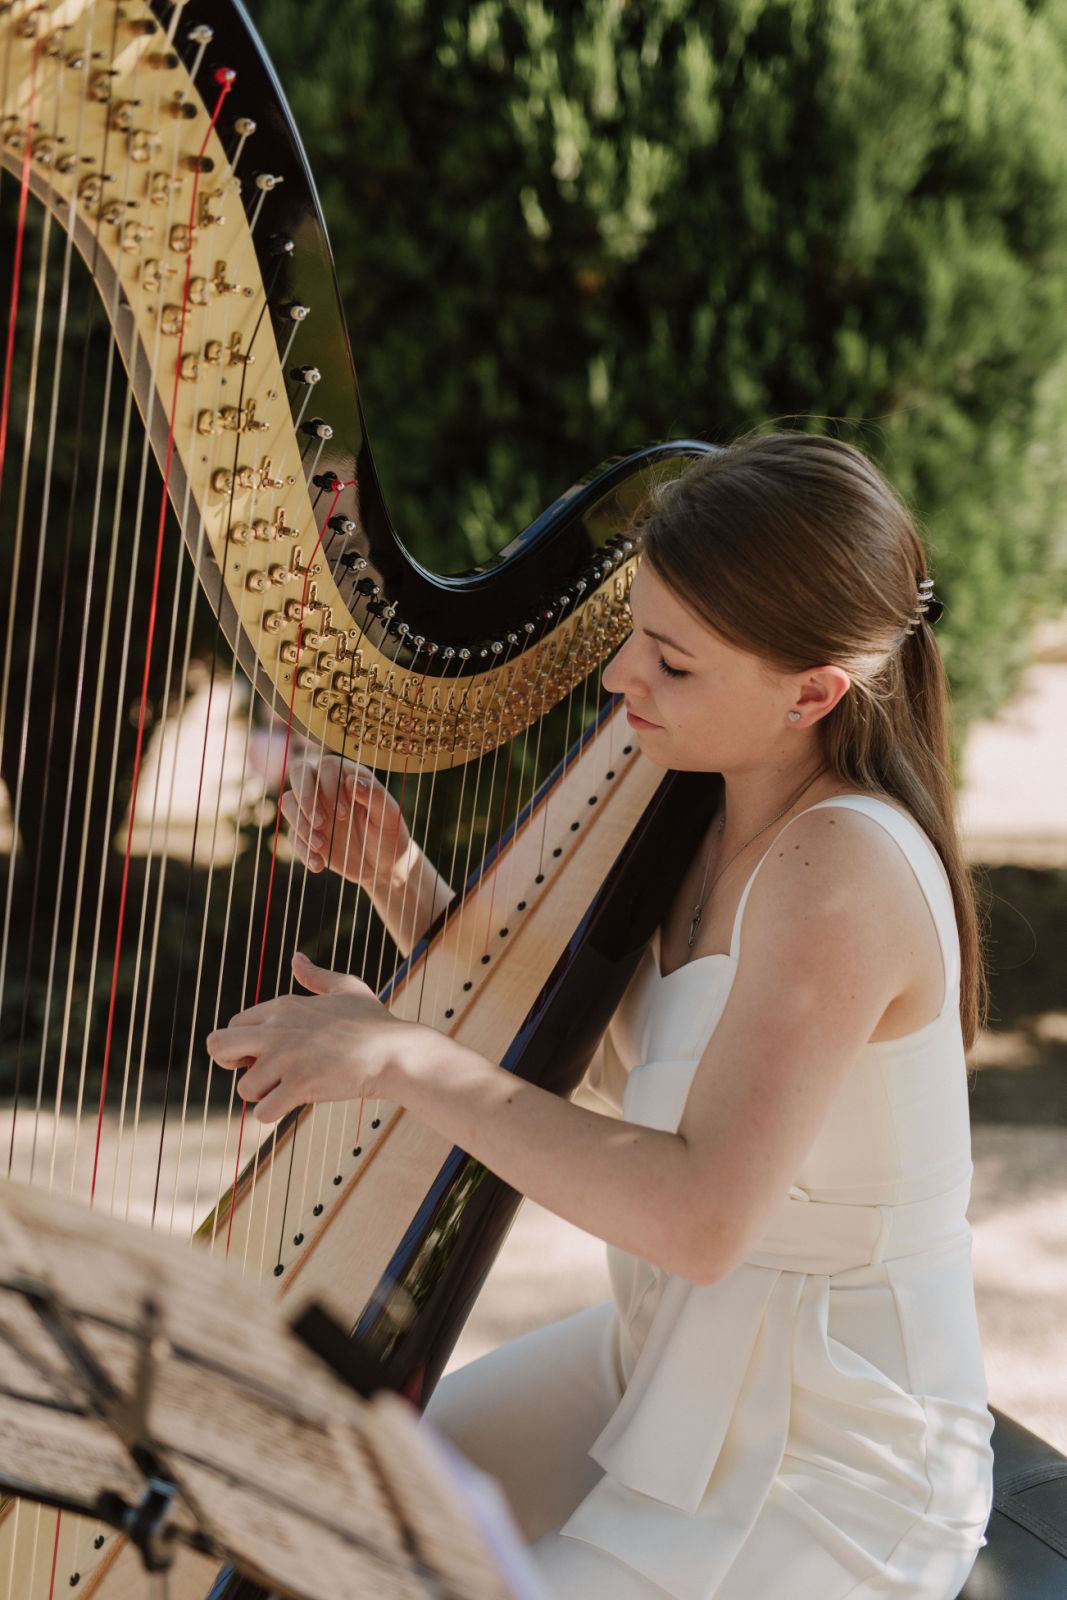 Harfa: njena istorija, prestiž i današnjost